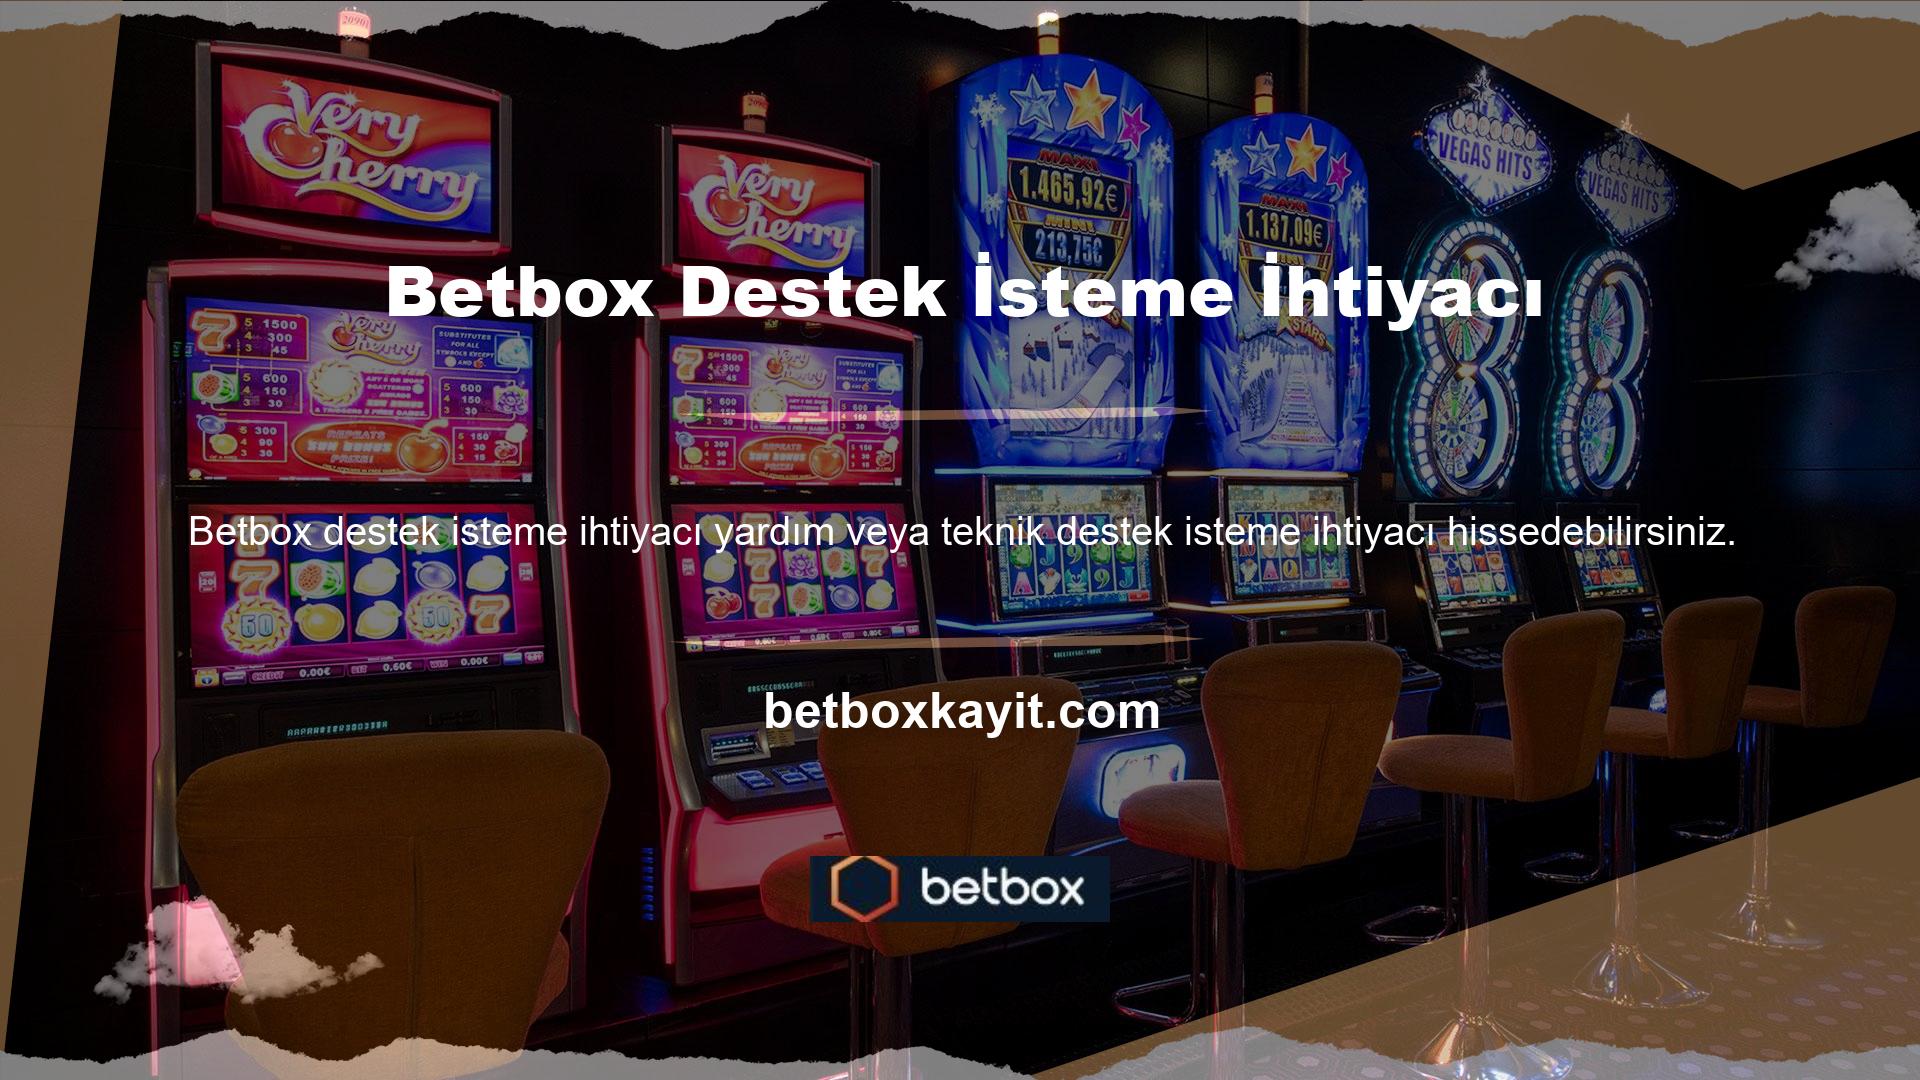 Bu durumlarda Betbox web sitesindeki müşteri hizmetleri alanına yönlendirileceksiniz